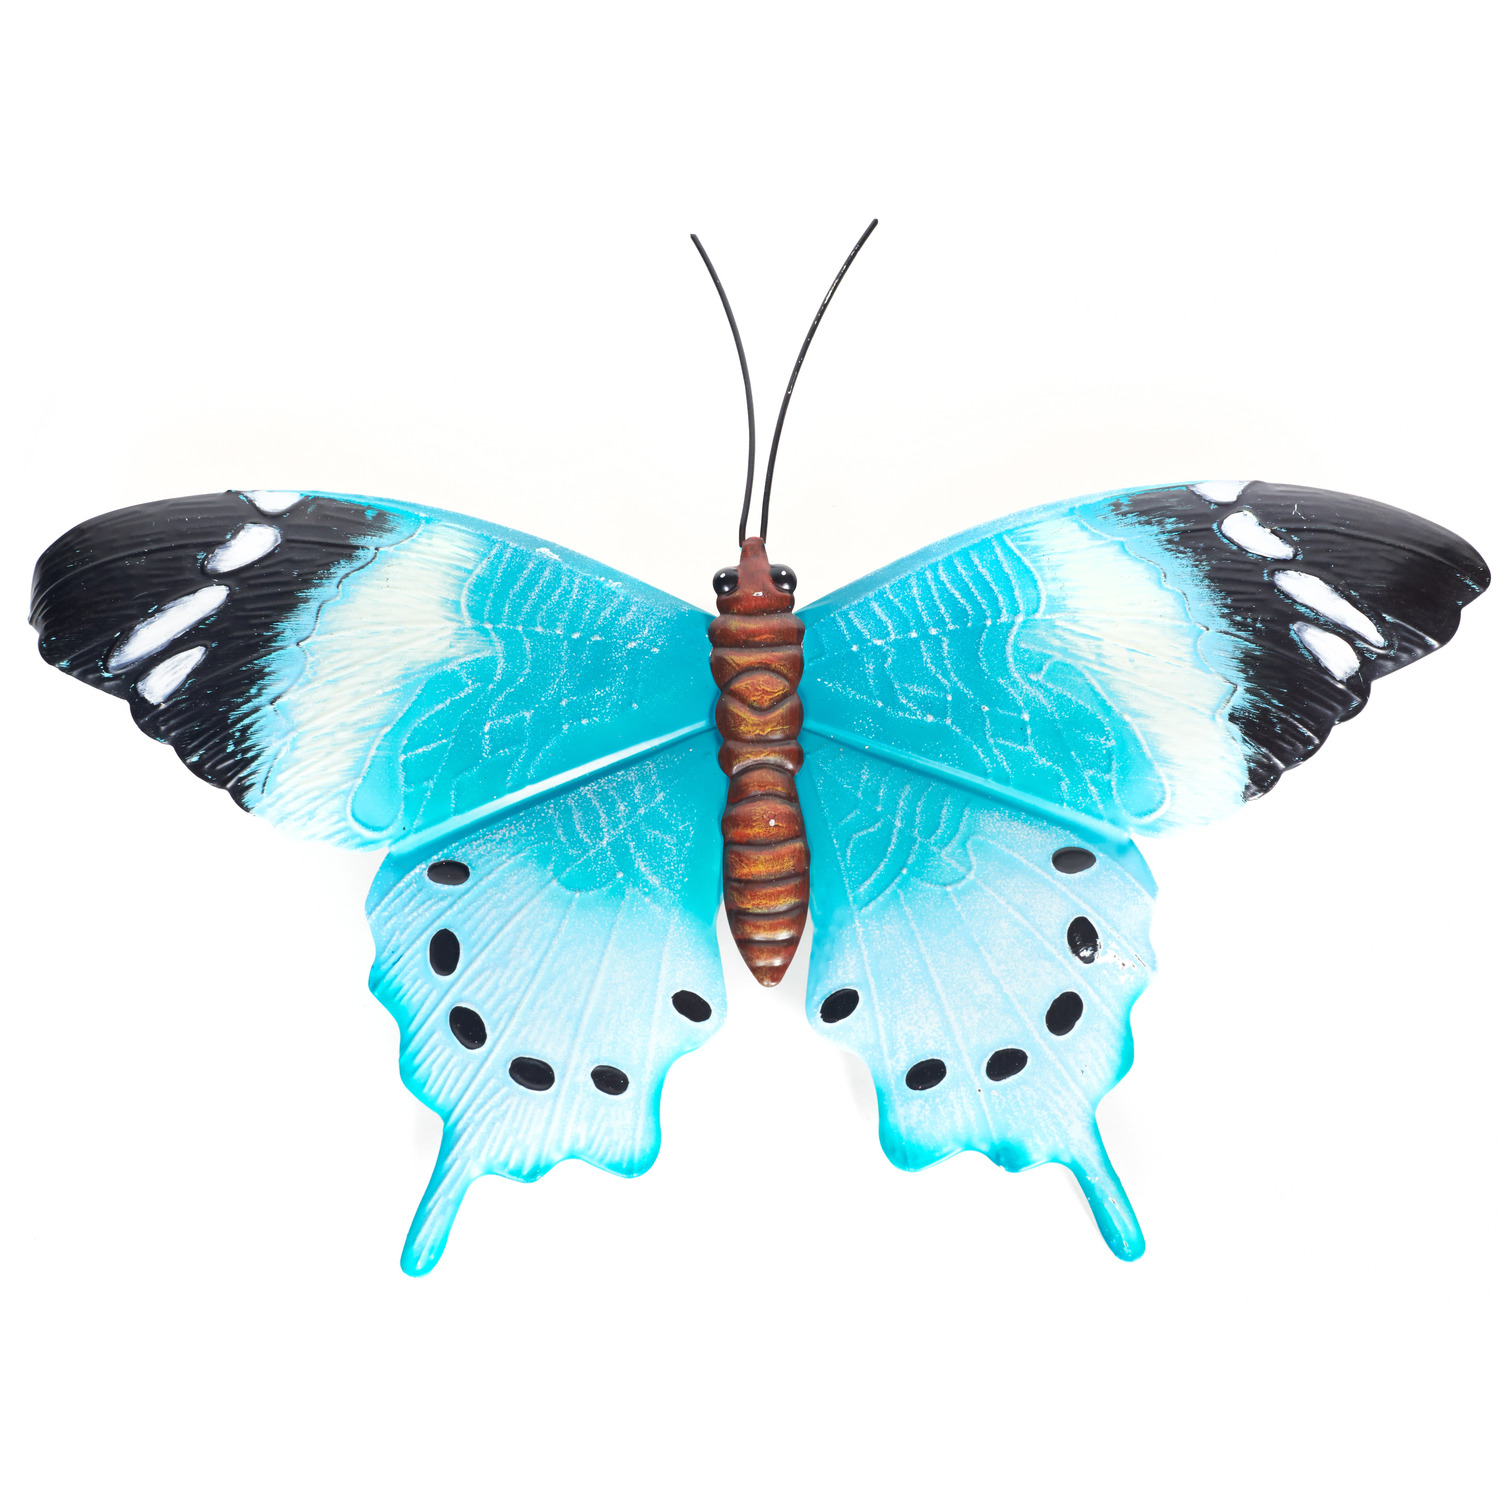 Tuindecoratie vlinder van metaal blauw-zwart 48 cm